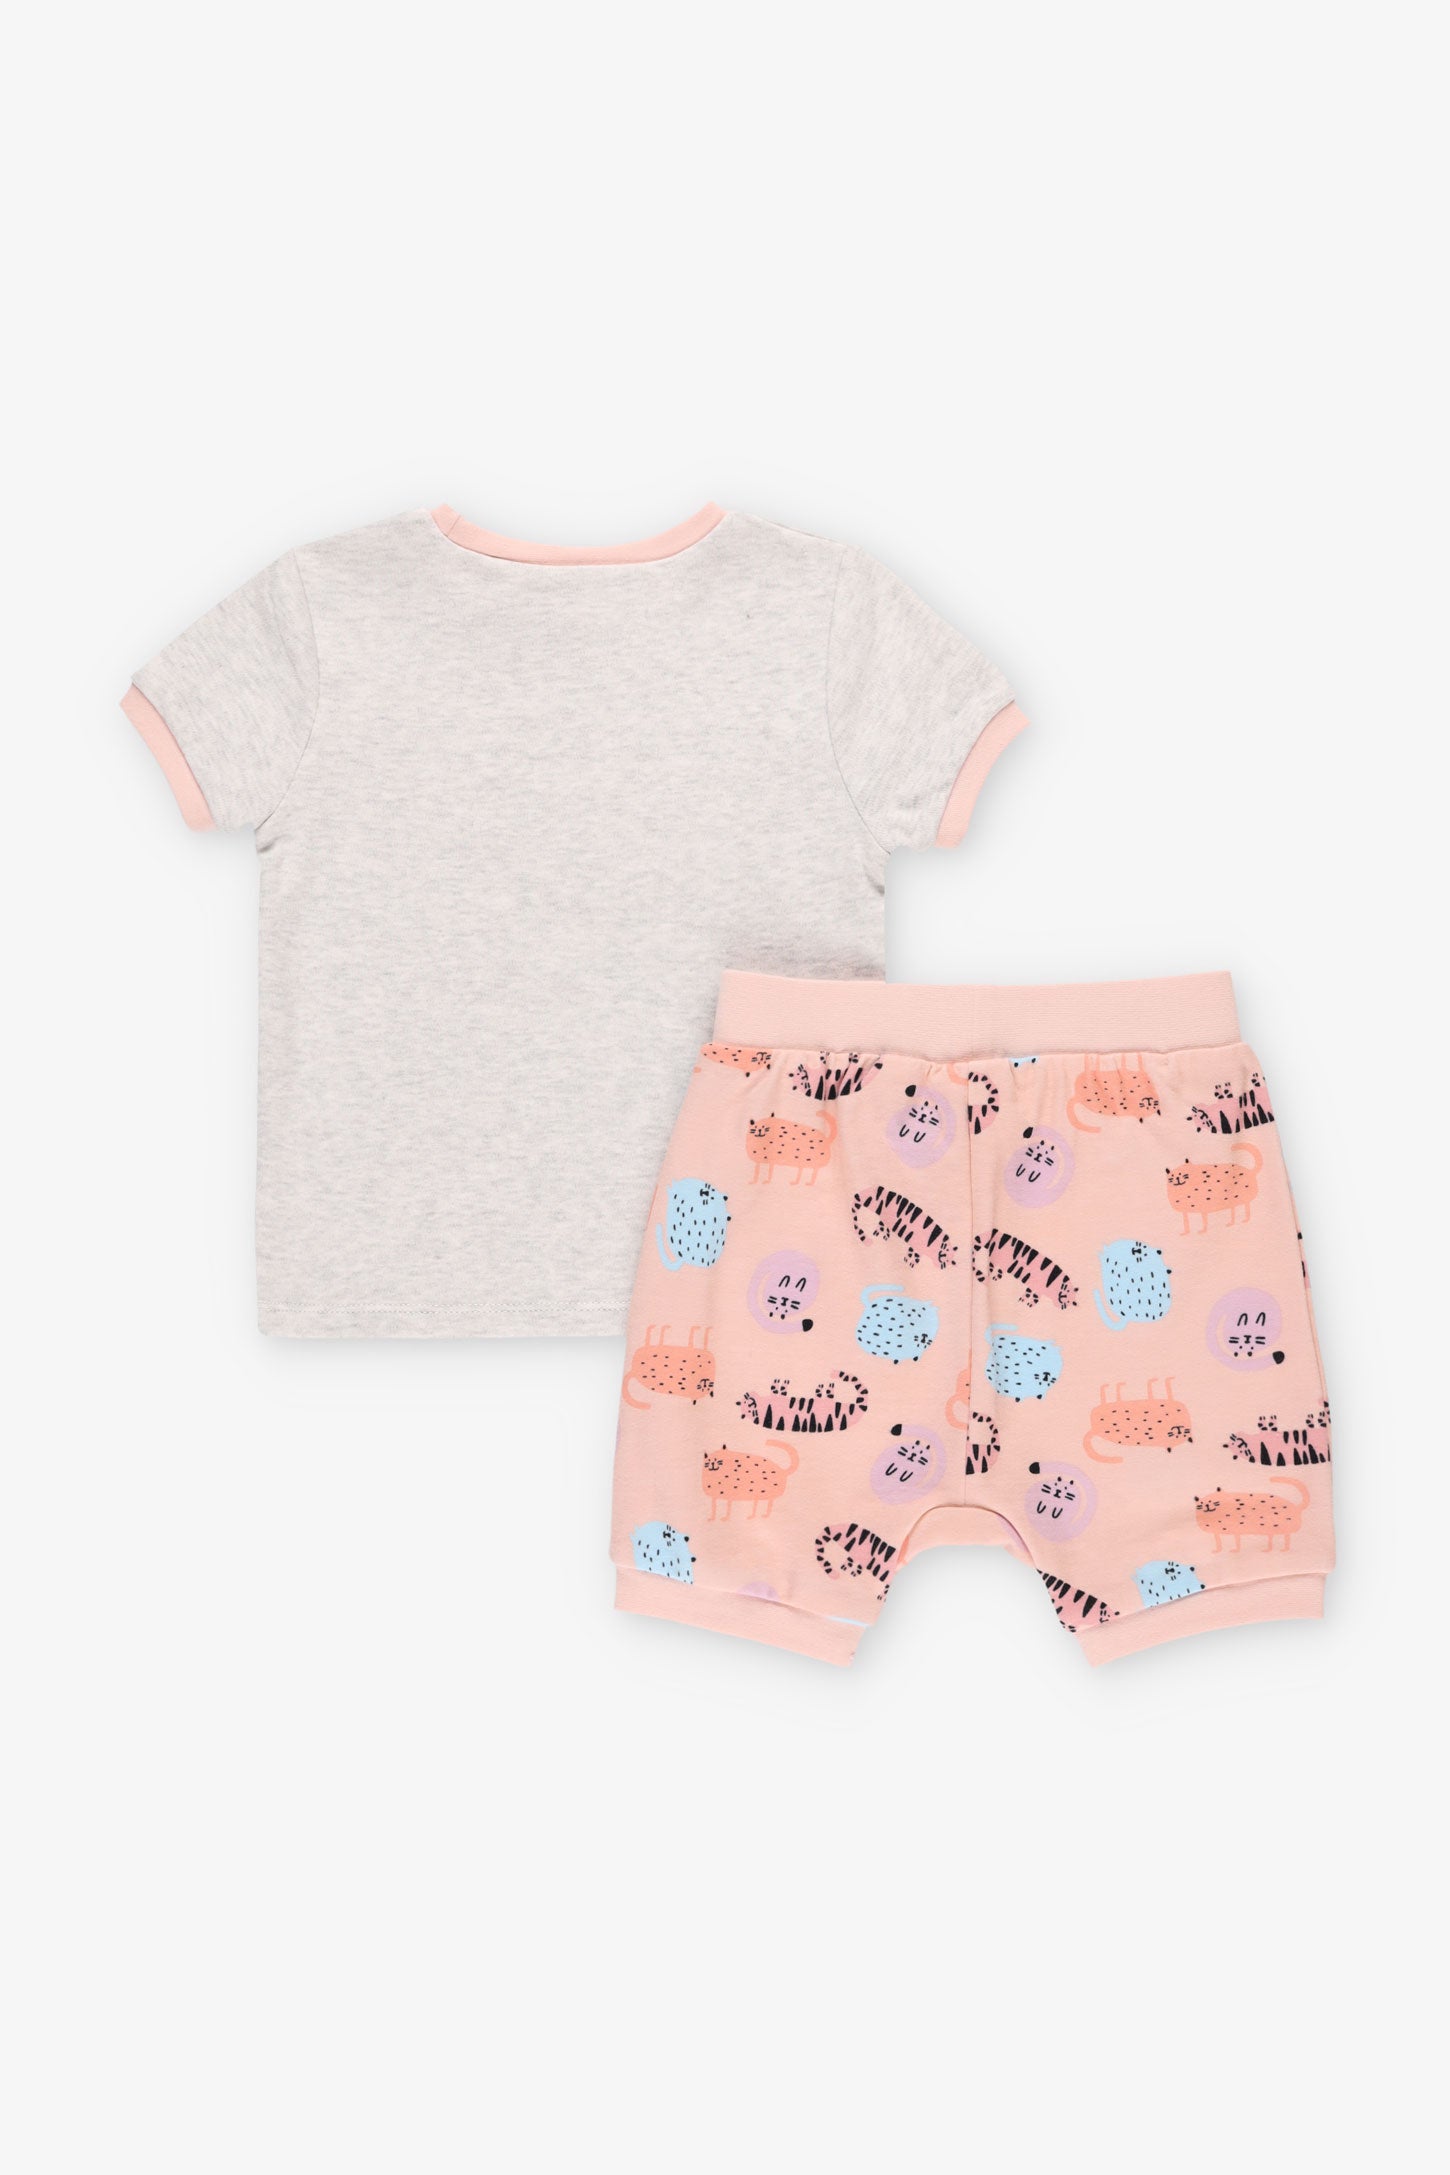 Pyjama 2-pièces en coton bio, 2T-3T - Bébé fille && GRIS PALE